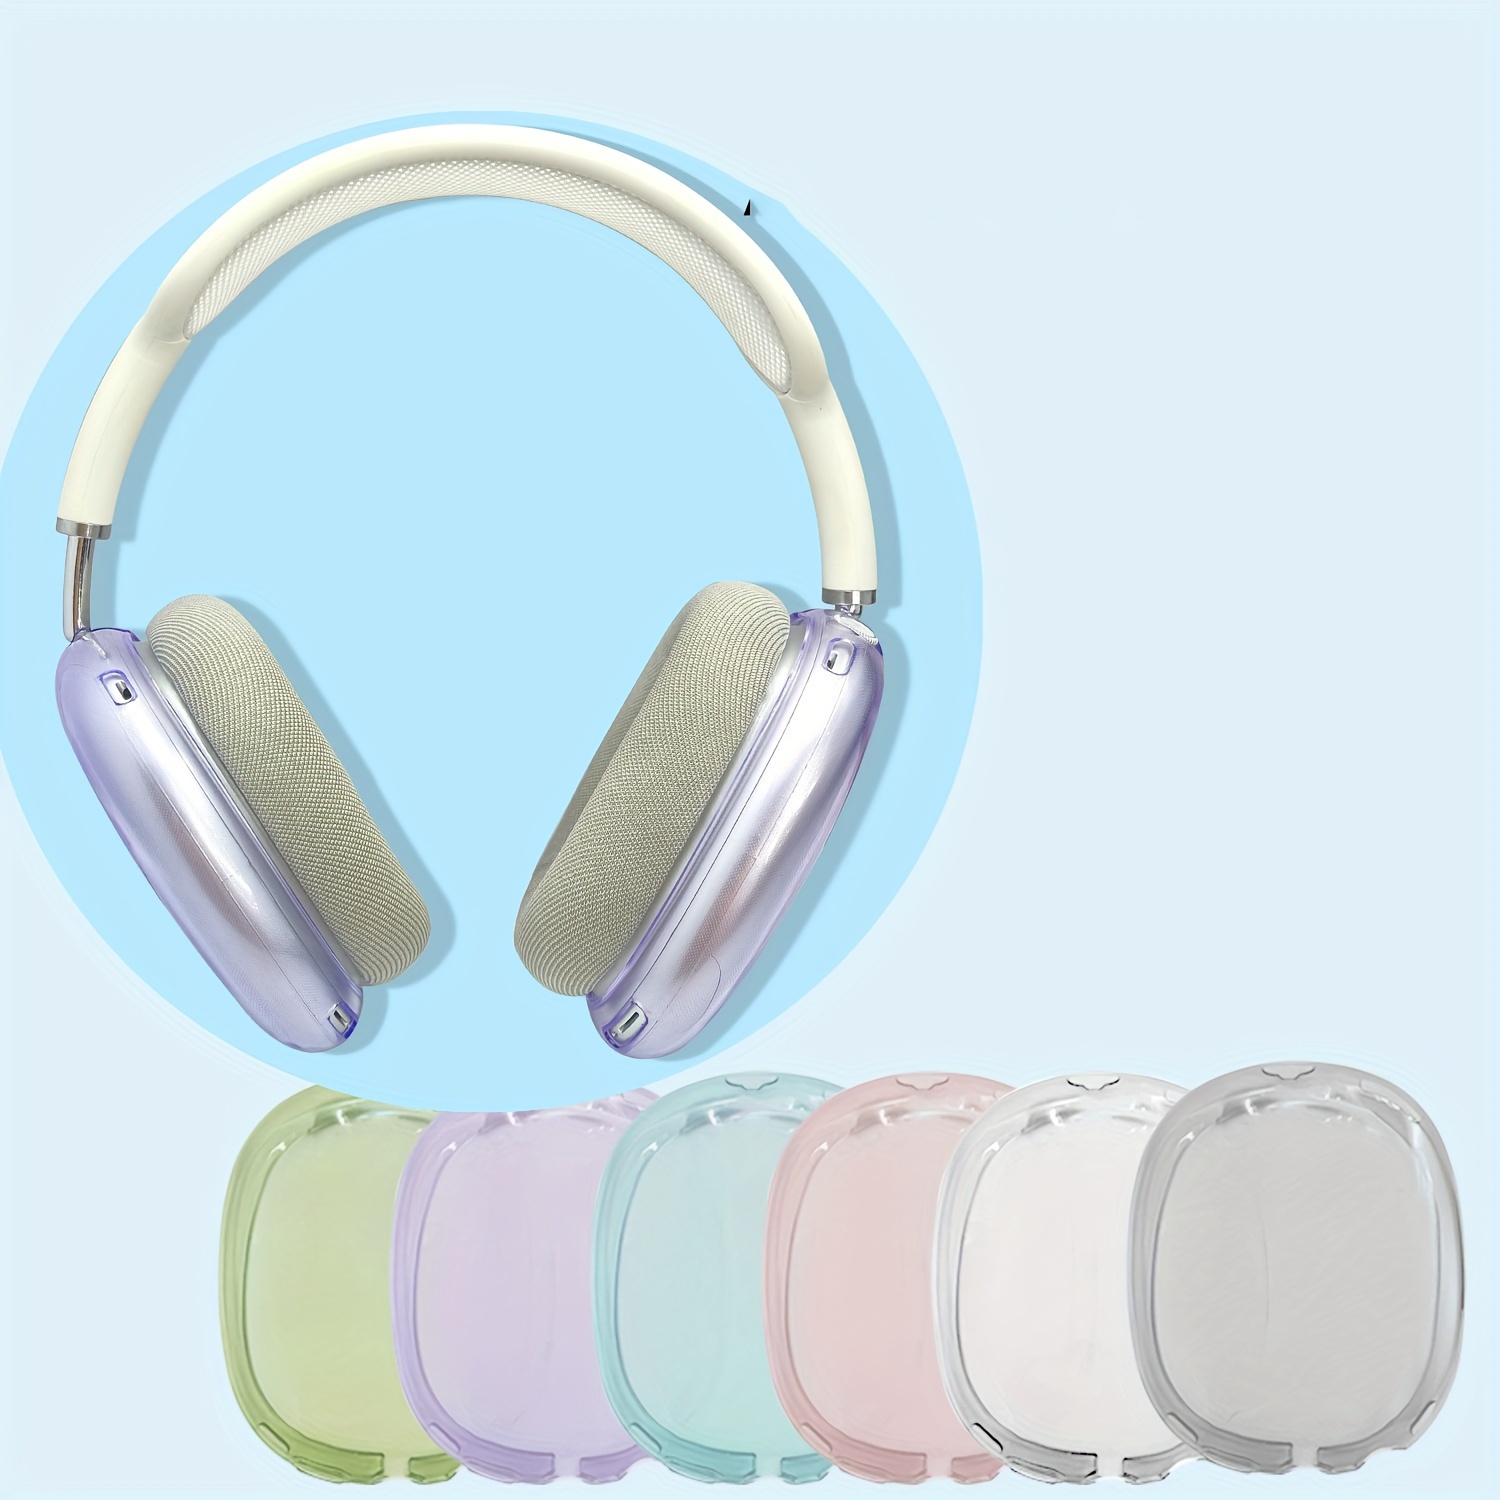  Funda para Airpods Max, funda de silicona para audífonos AirPods  Max, funda de silicona transparente y suave para Airpod Max de TPU suave  para los oídos, funda para la diadema para